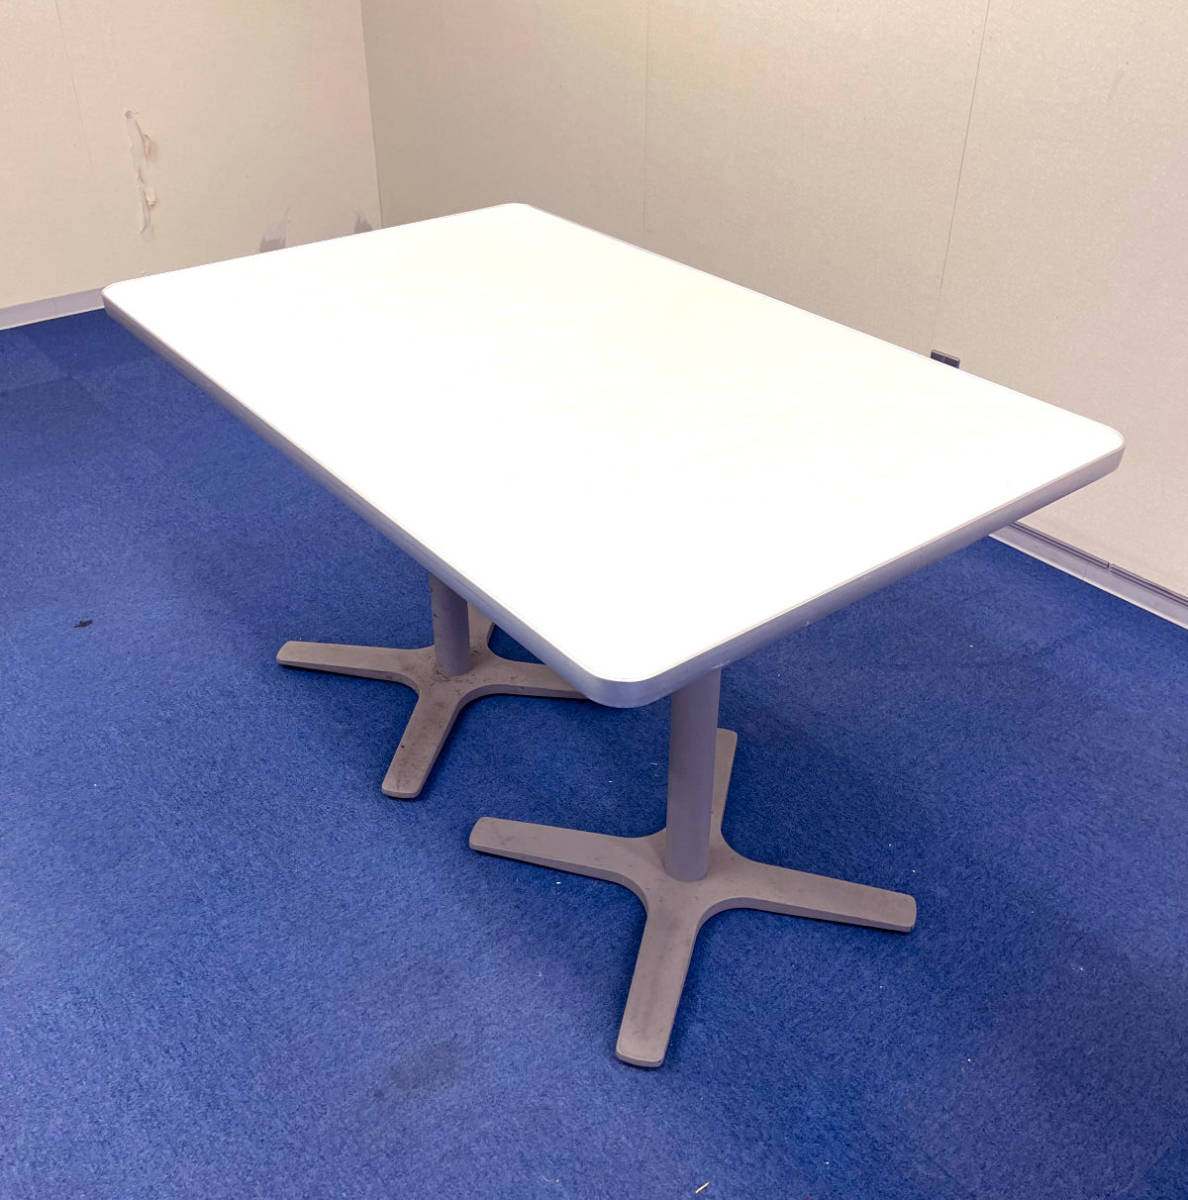  б/у прямоугольный масса надежно сделал Cafe стол белый обеденный стол Cafe стол квадратное стол mi-ting собрание 